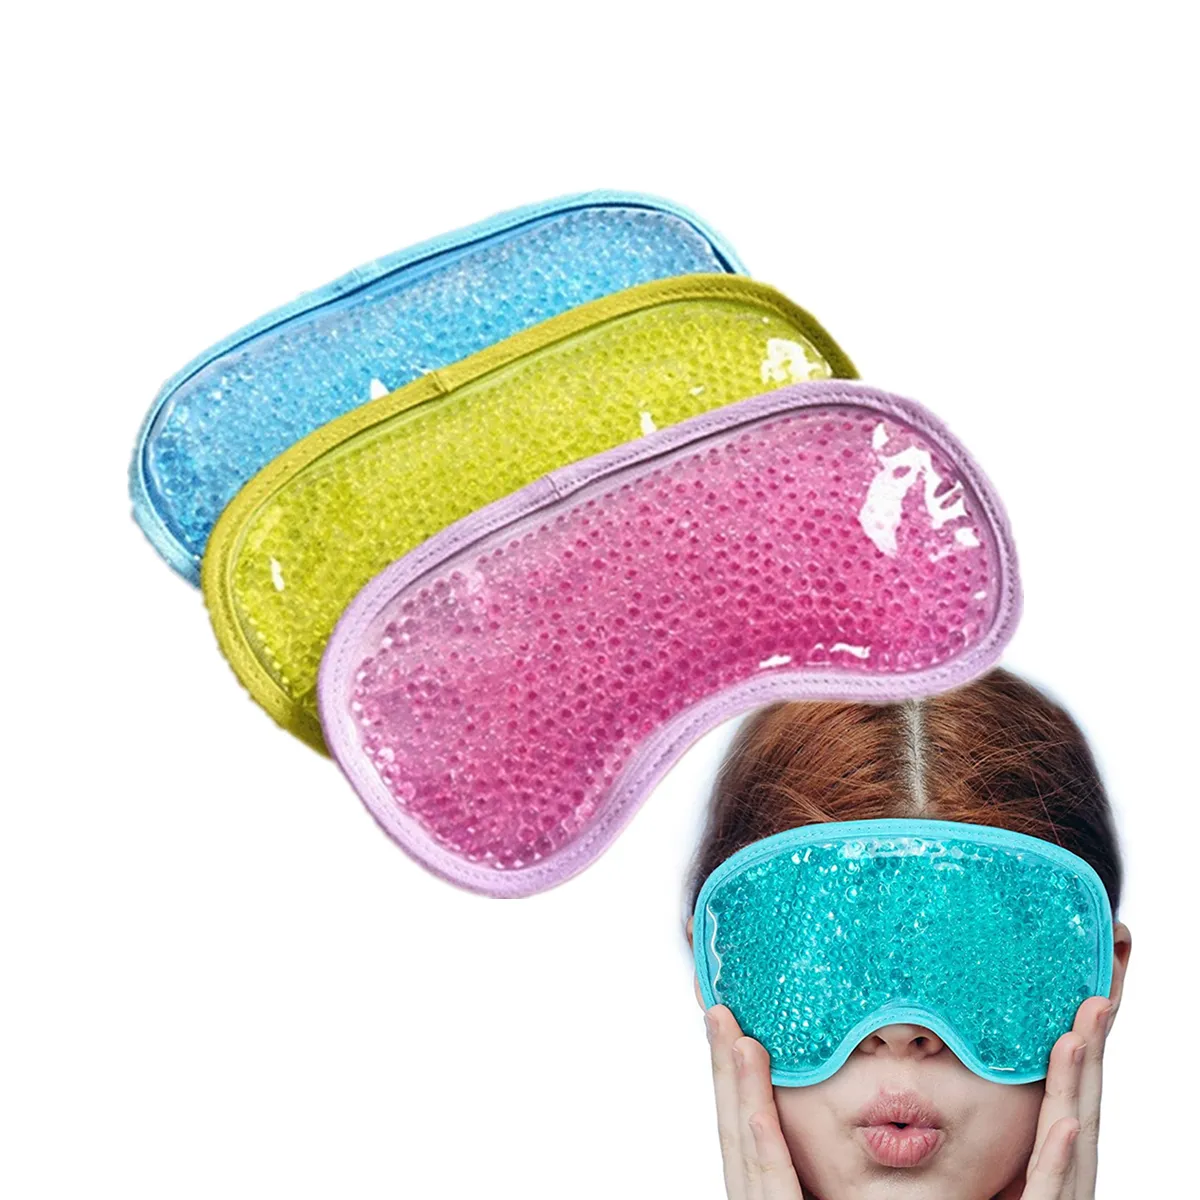 Mascarilla de ojos reutilizable, máscara de ojos con cuentas de Gel de cuidado Personal, caliente o frío, con purpurina de colores